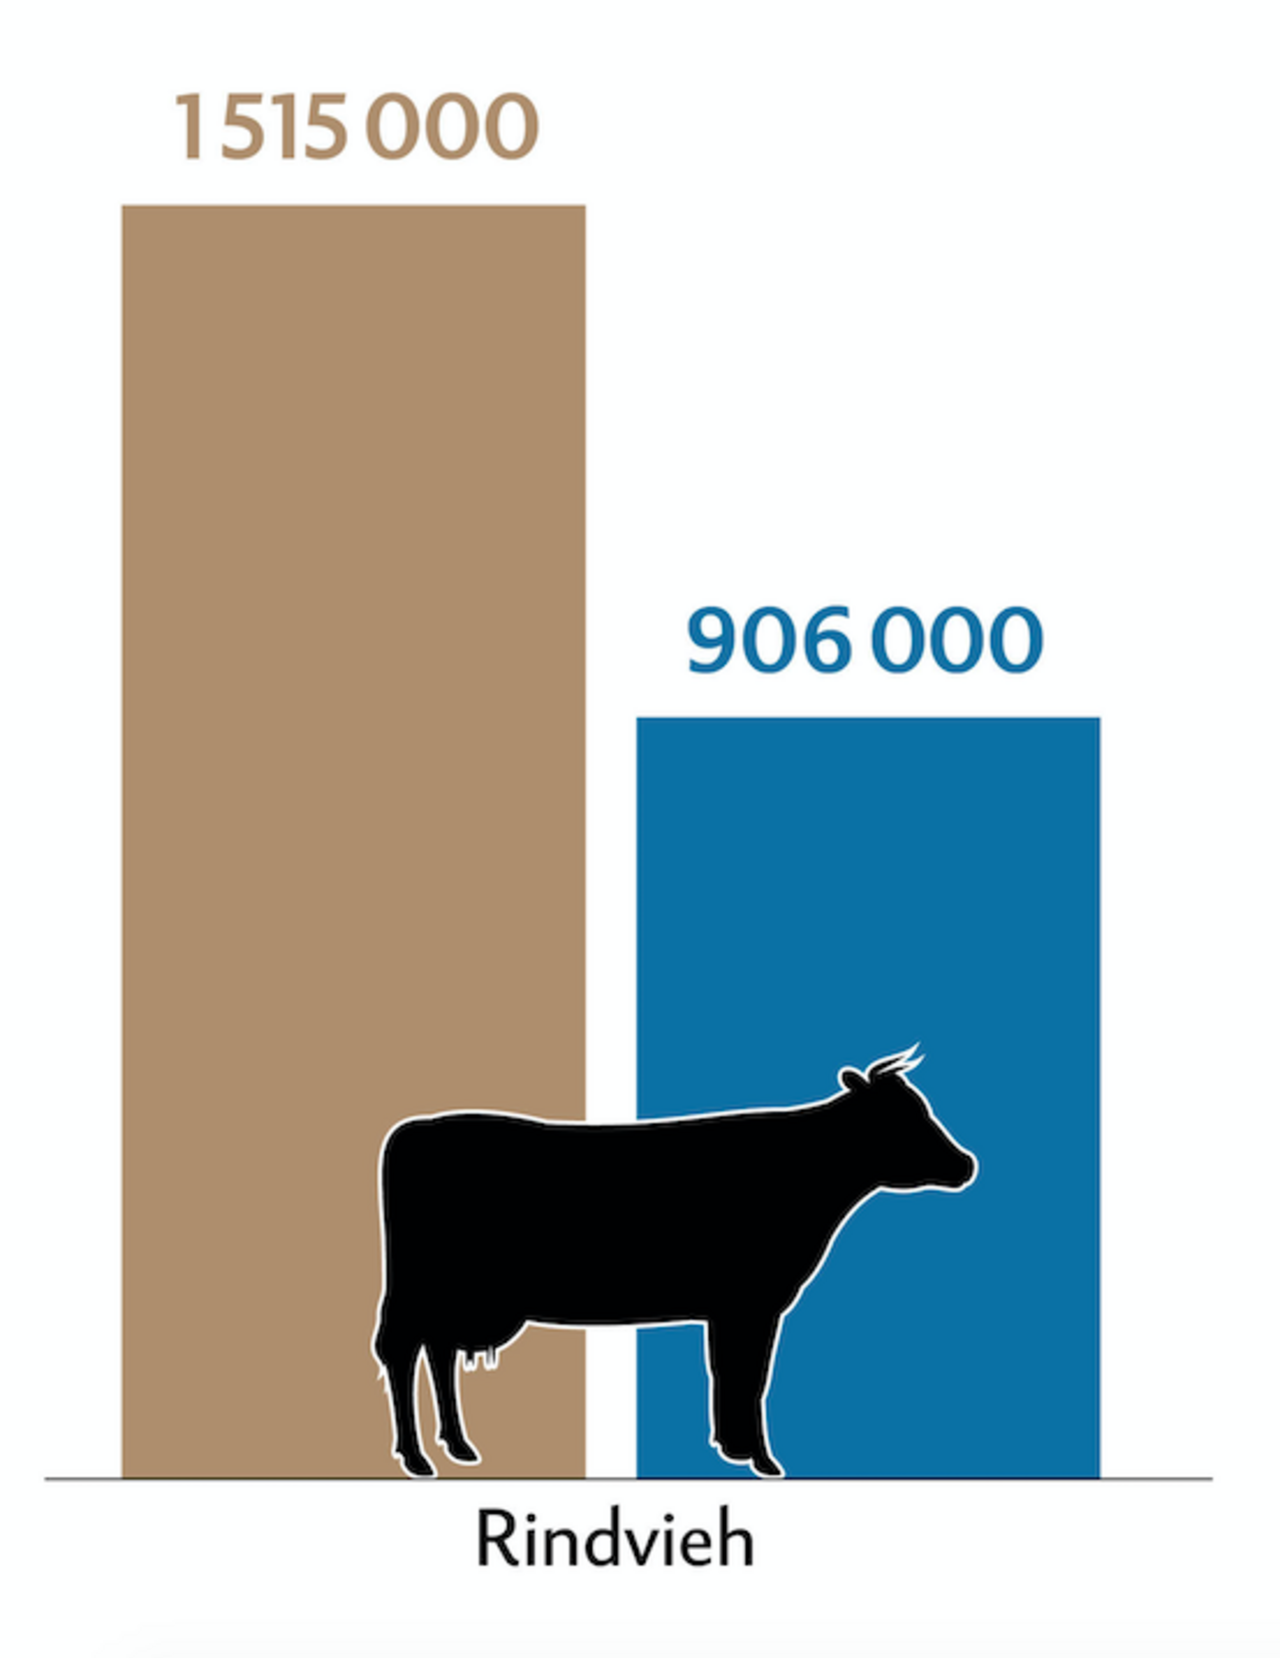 Balkendiagramm zeigt die Tierzahlen (braun) und Behandlungszahlen (blau) der Rinder in der Schweiz.